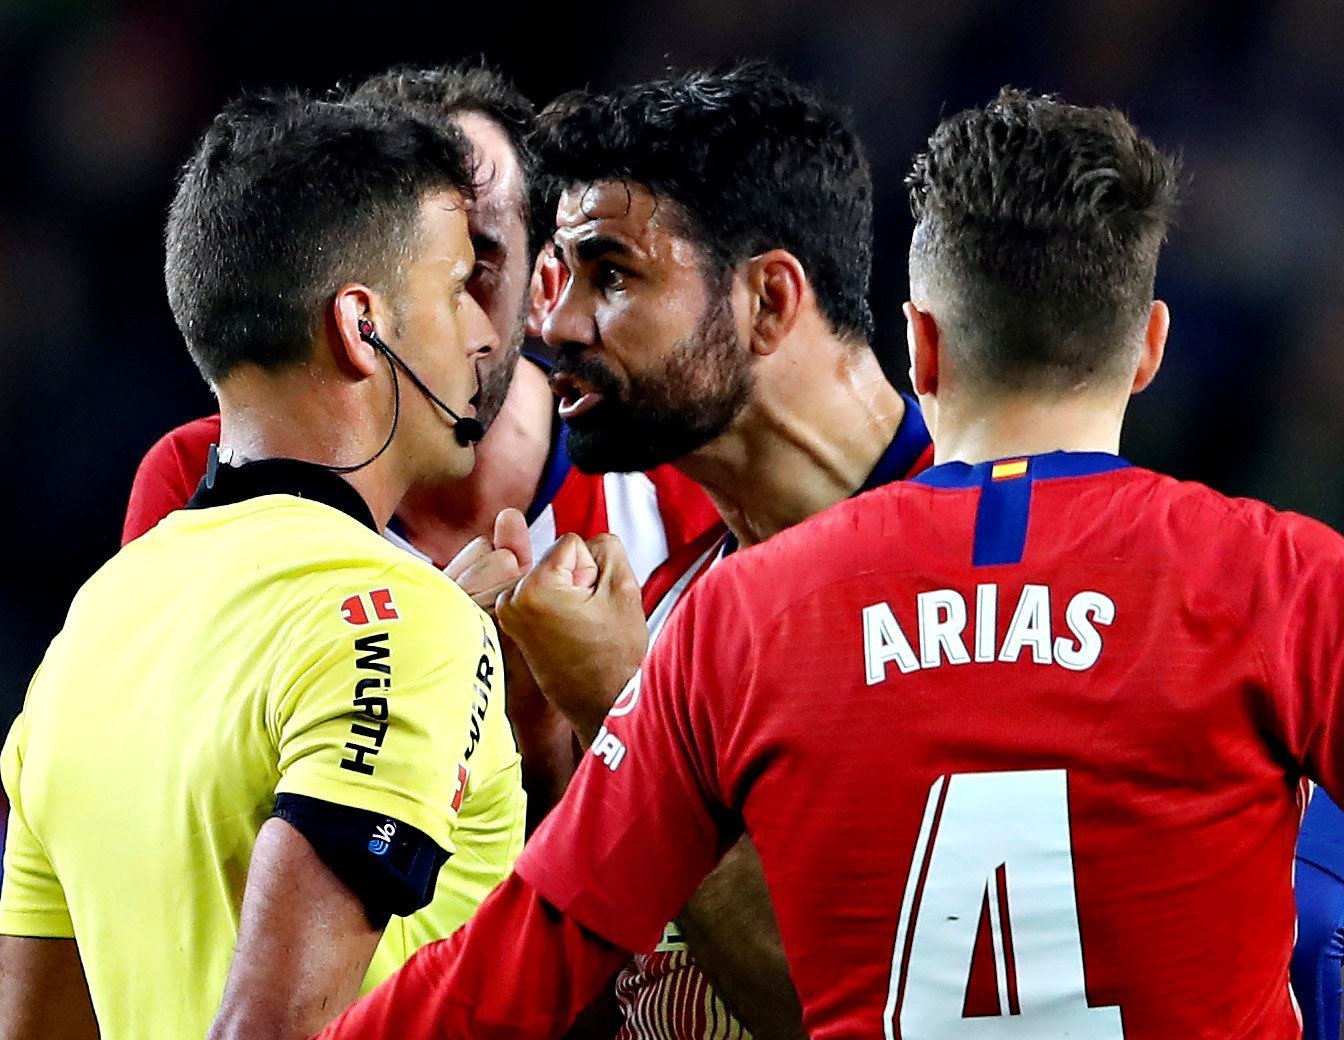 Diego Costa, expulsado por insultar al árbitro